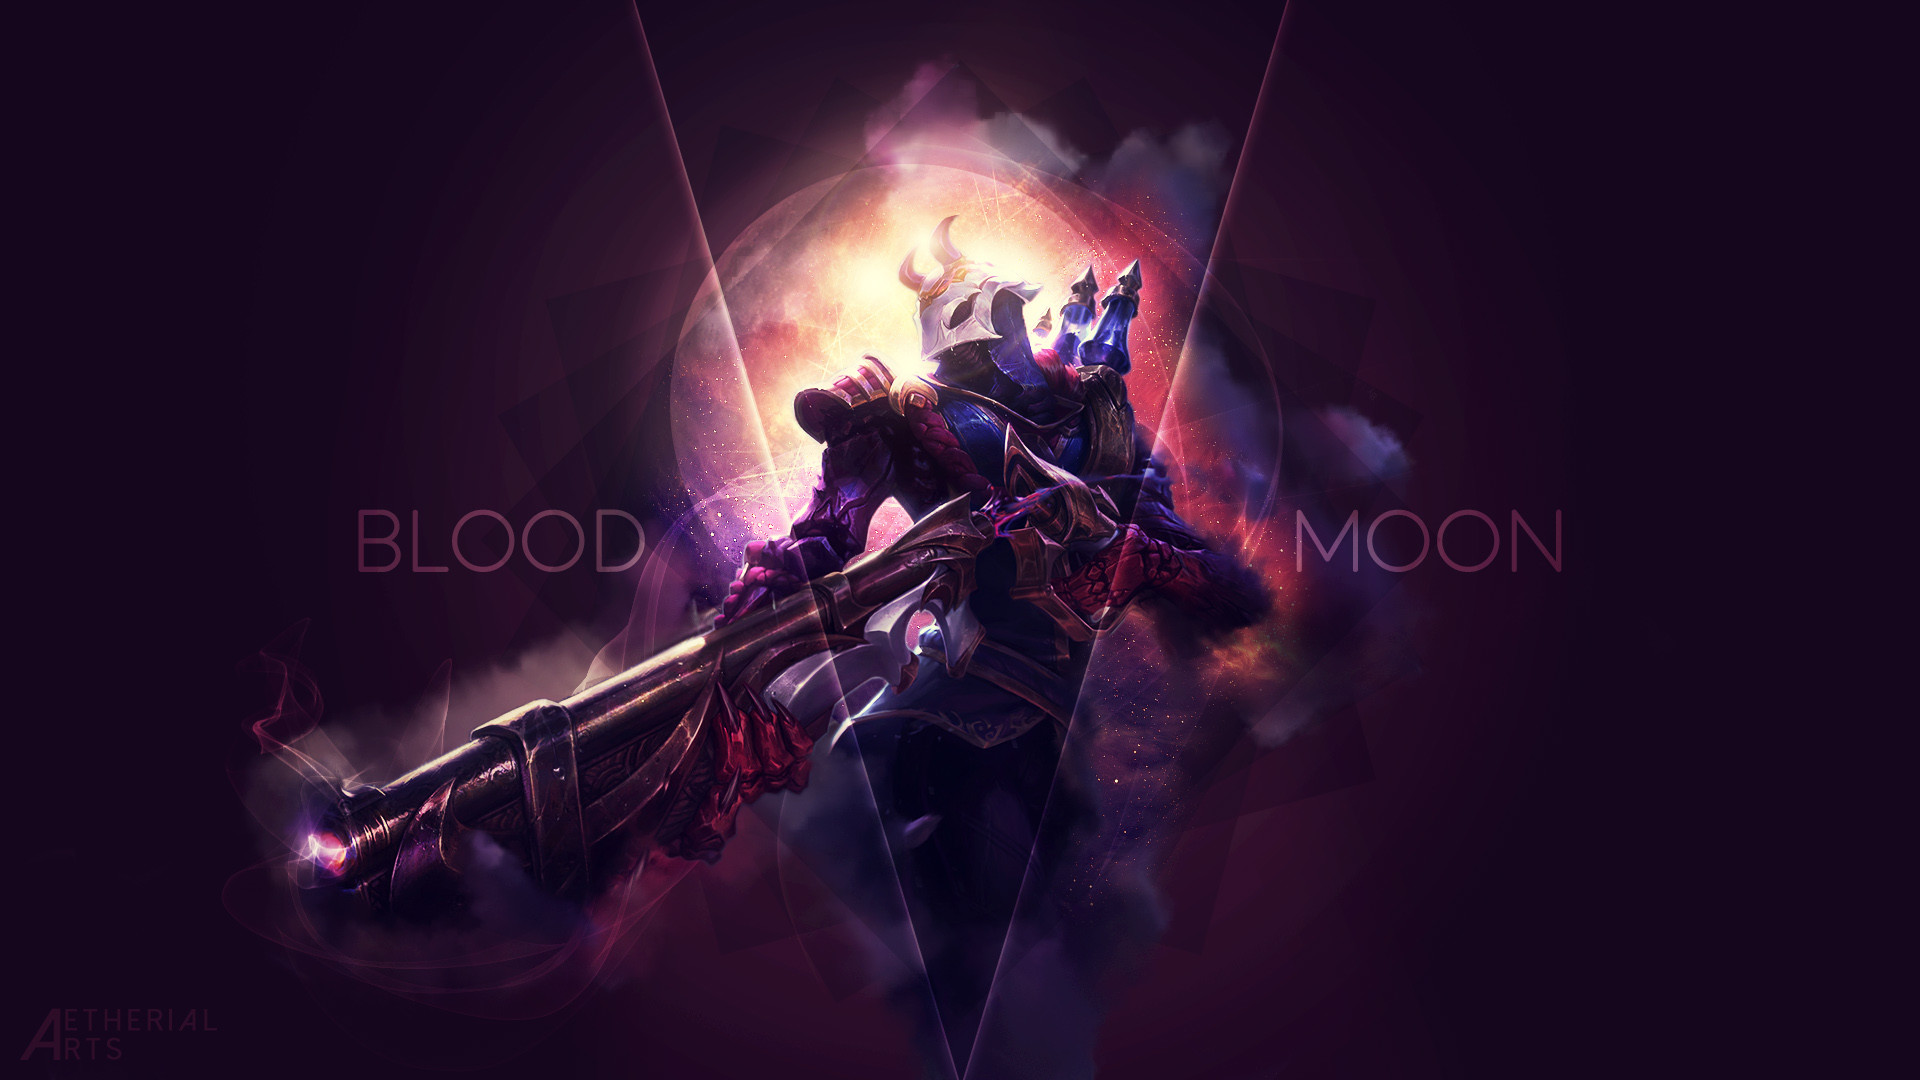 1920x1080 Blood Moon Jhin by AetherialArts HD Wallpaper Background Fan Art Artwork  League of Legends lol